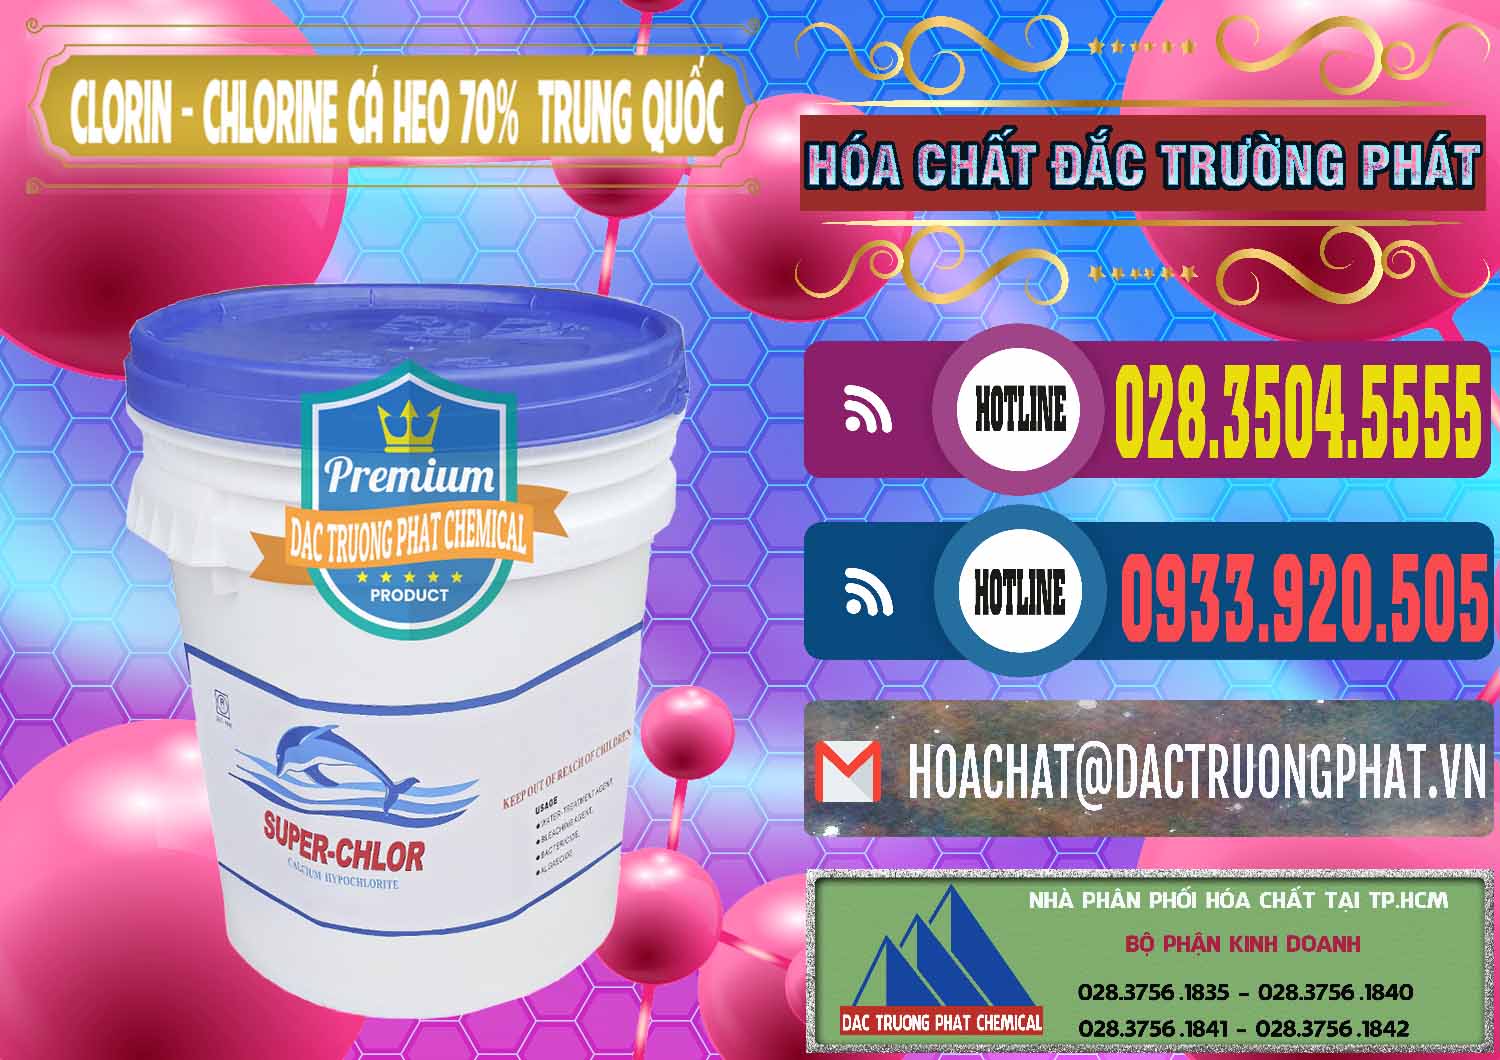 Cty bán - cung ứng Clorin - Chlorine Cá Heo 70% Super Chlor Nắp Xanh Trung Quốc China - 0209 - Nơi phân phối & cung cấp hóa chất tại TP.HCM - muabanhoachat.com.vn